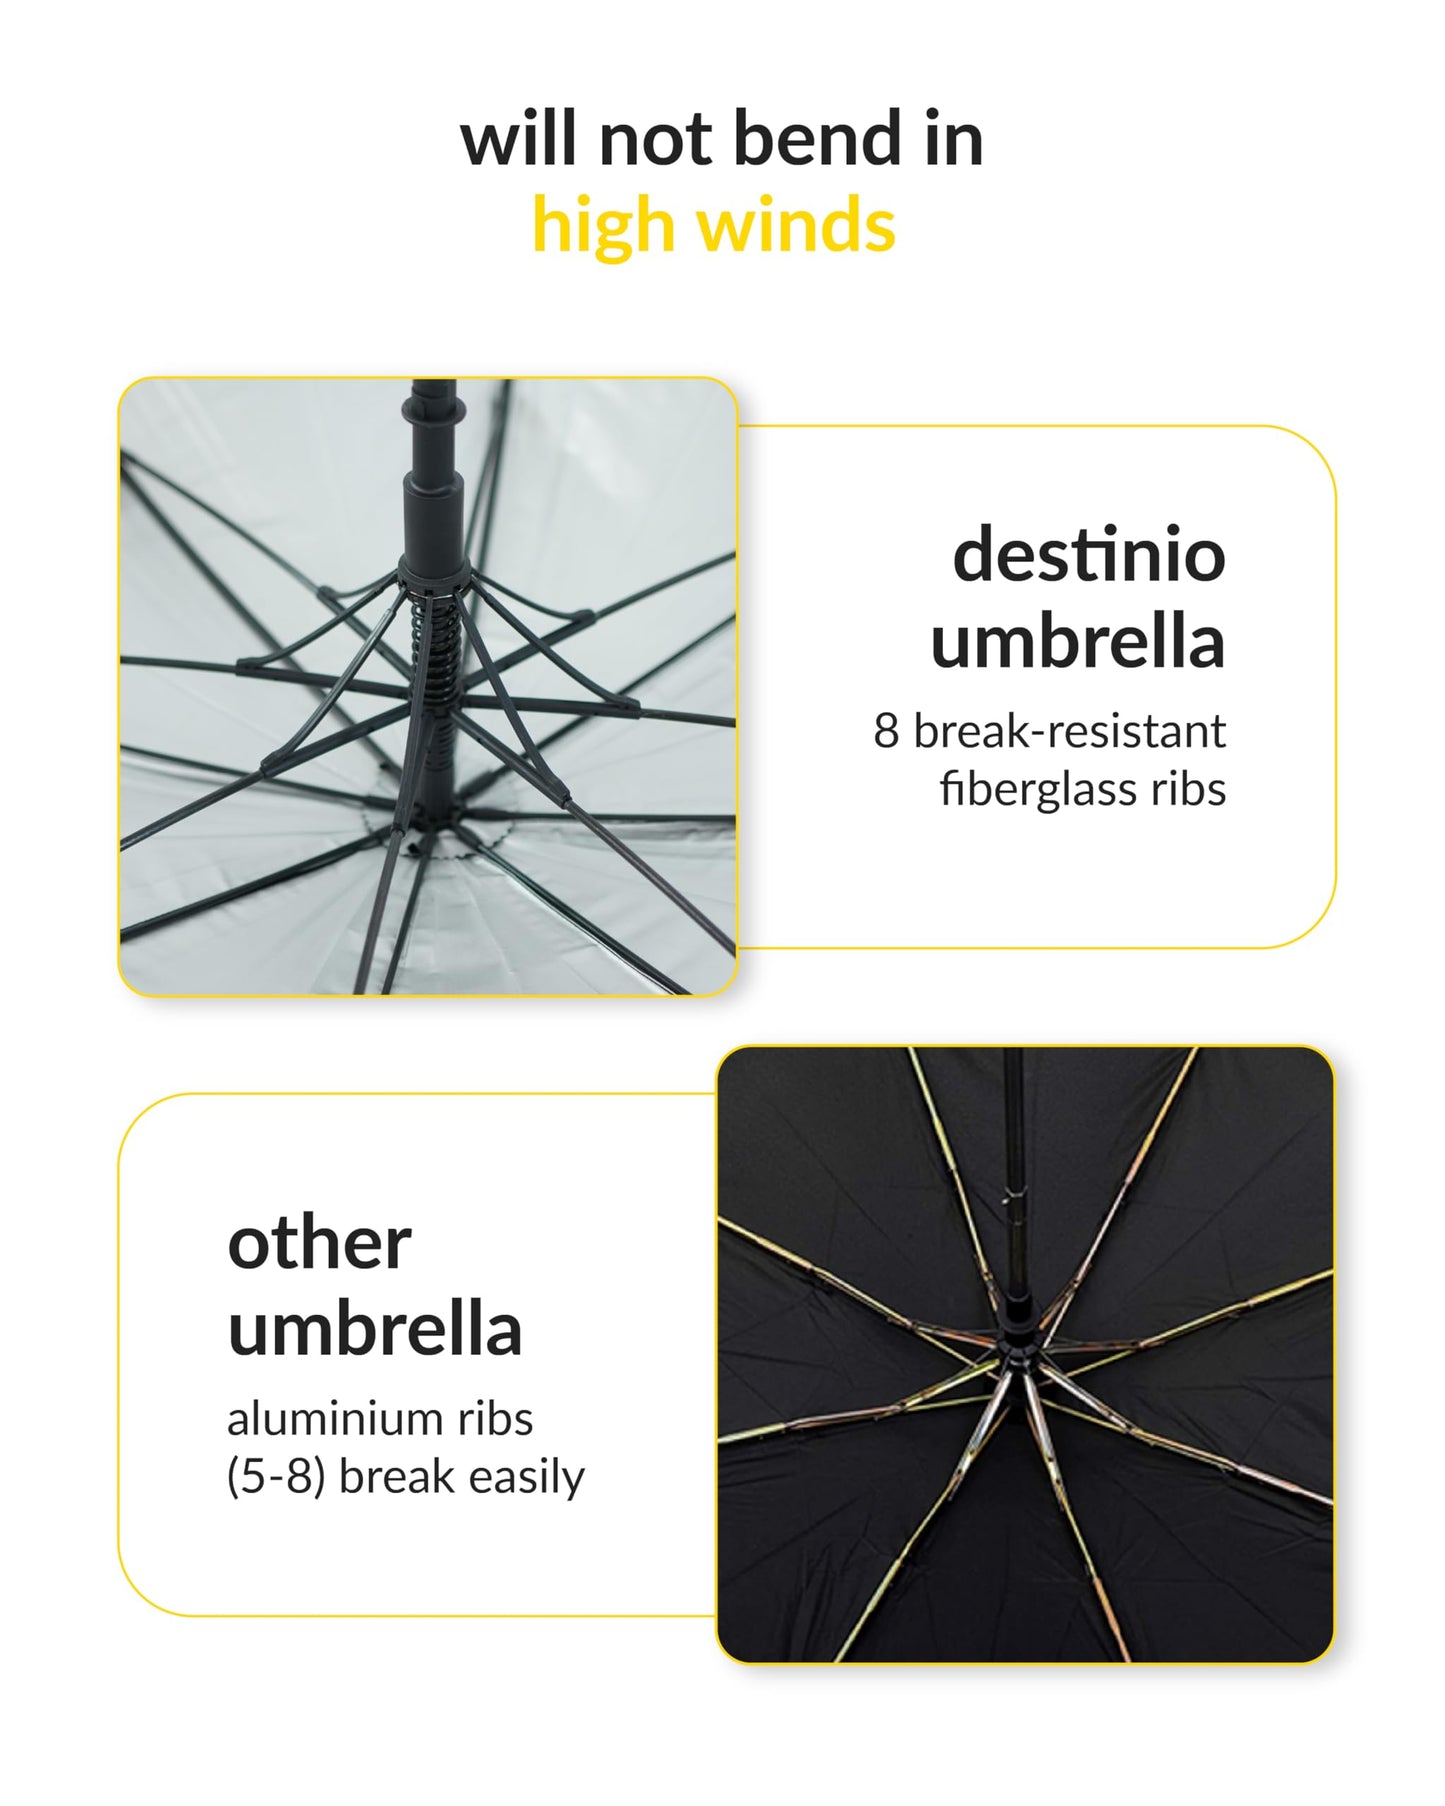 Destinio Big Umbrella - Auto Open 54 inch Umbrella for Men with UV protection - Umbrella Big Size for Rain with rain cover, Large Umbrella (Black, 1 unit) (Black 27 Inch)